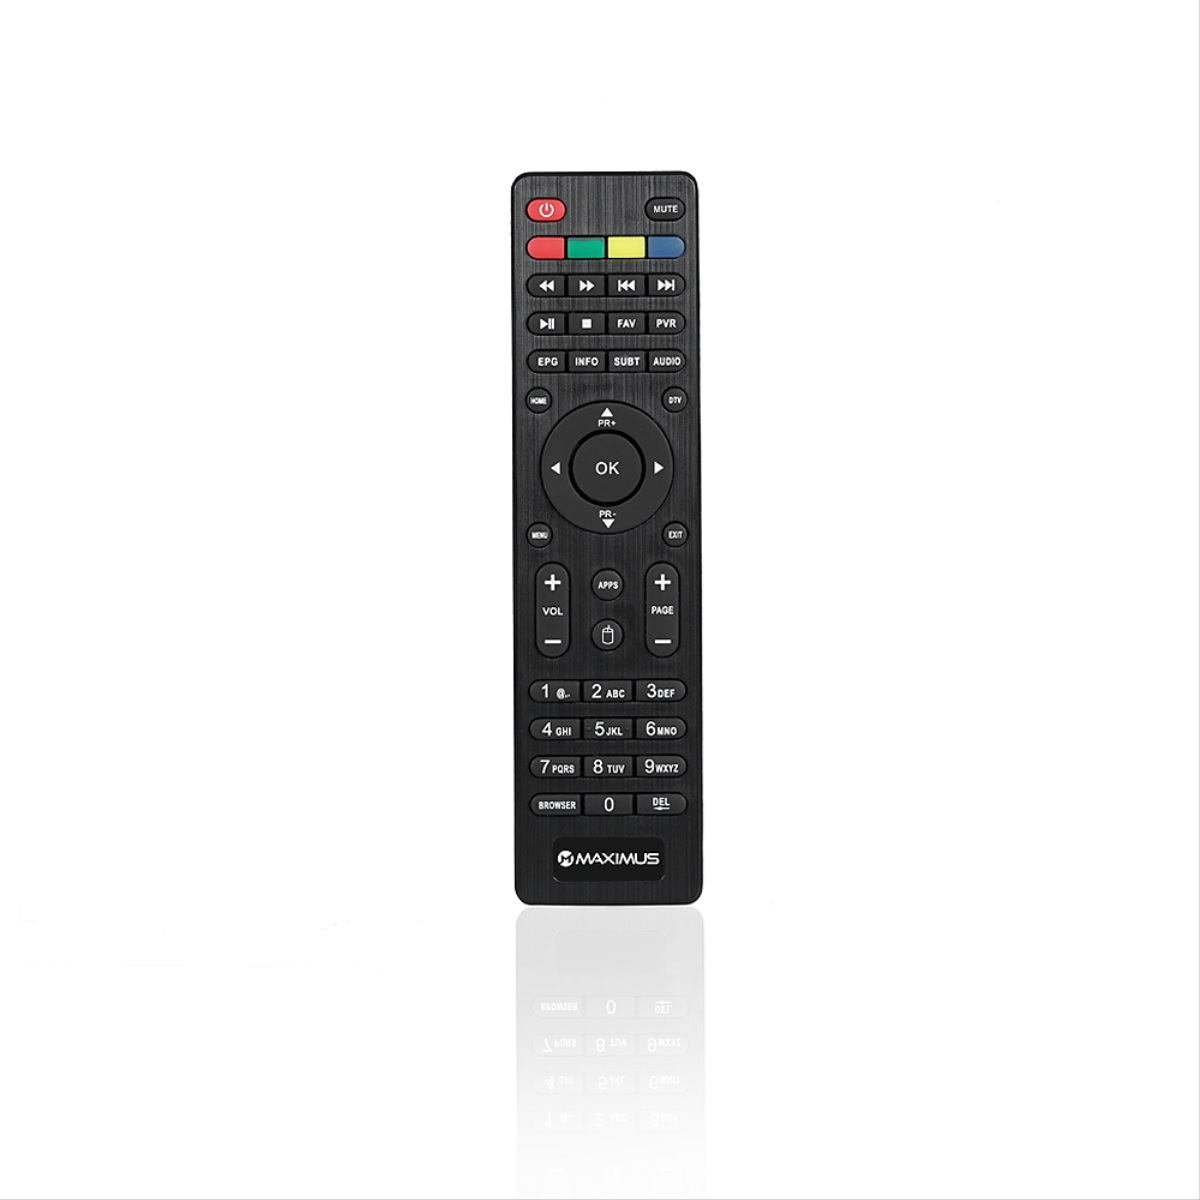 MAXIMUS 5.0 (PVR-Funktion, - Box und mit DVB-S2, TV Receiver Fernbedienung HDMI Schwarz) Sat-Receiver Wlan HD